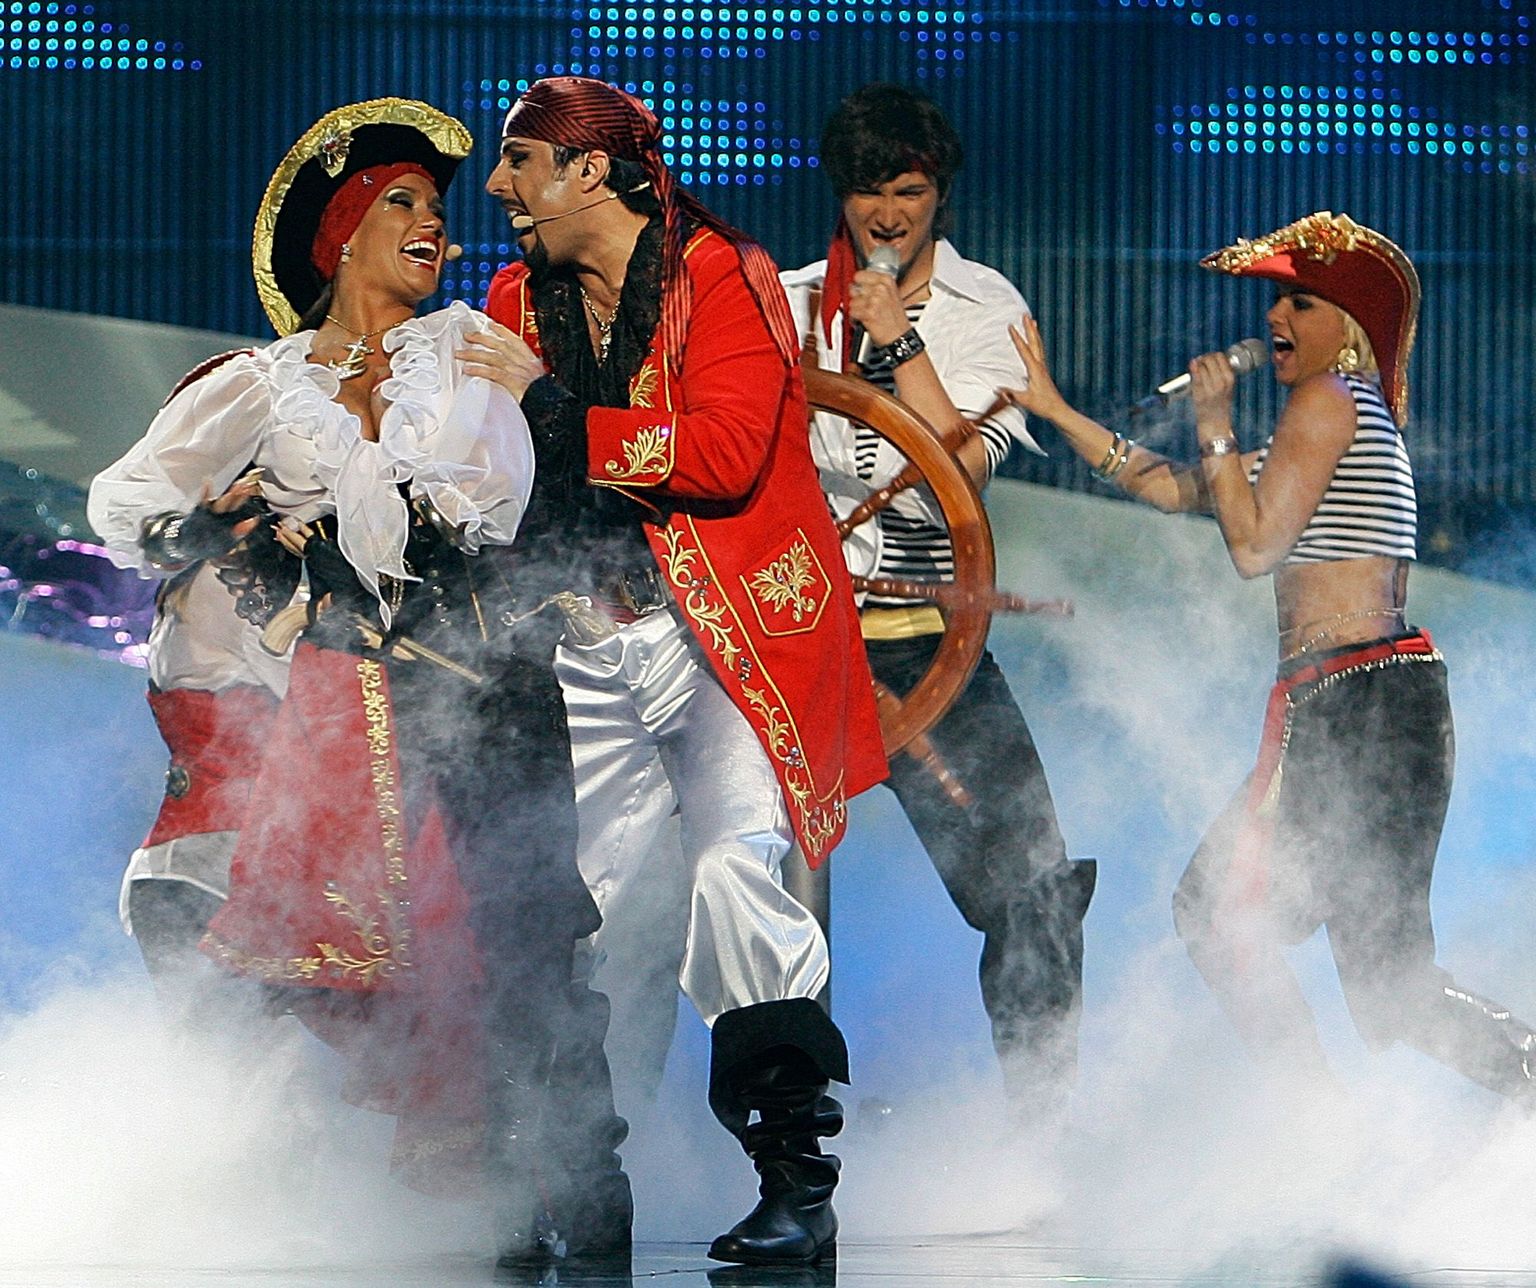 Läti esindajad mullusel Eurovisiooni lauluvõistlusel, mis toimus Belgradis.